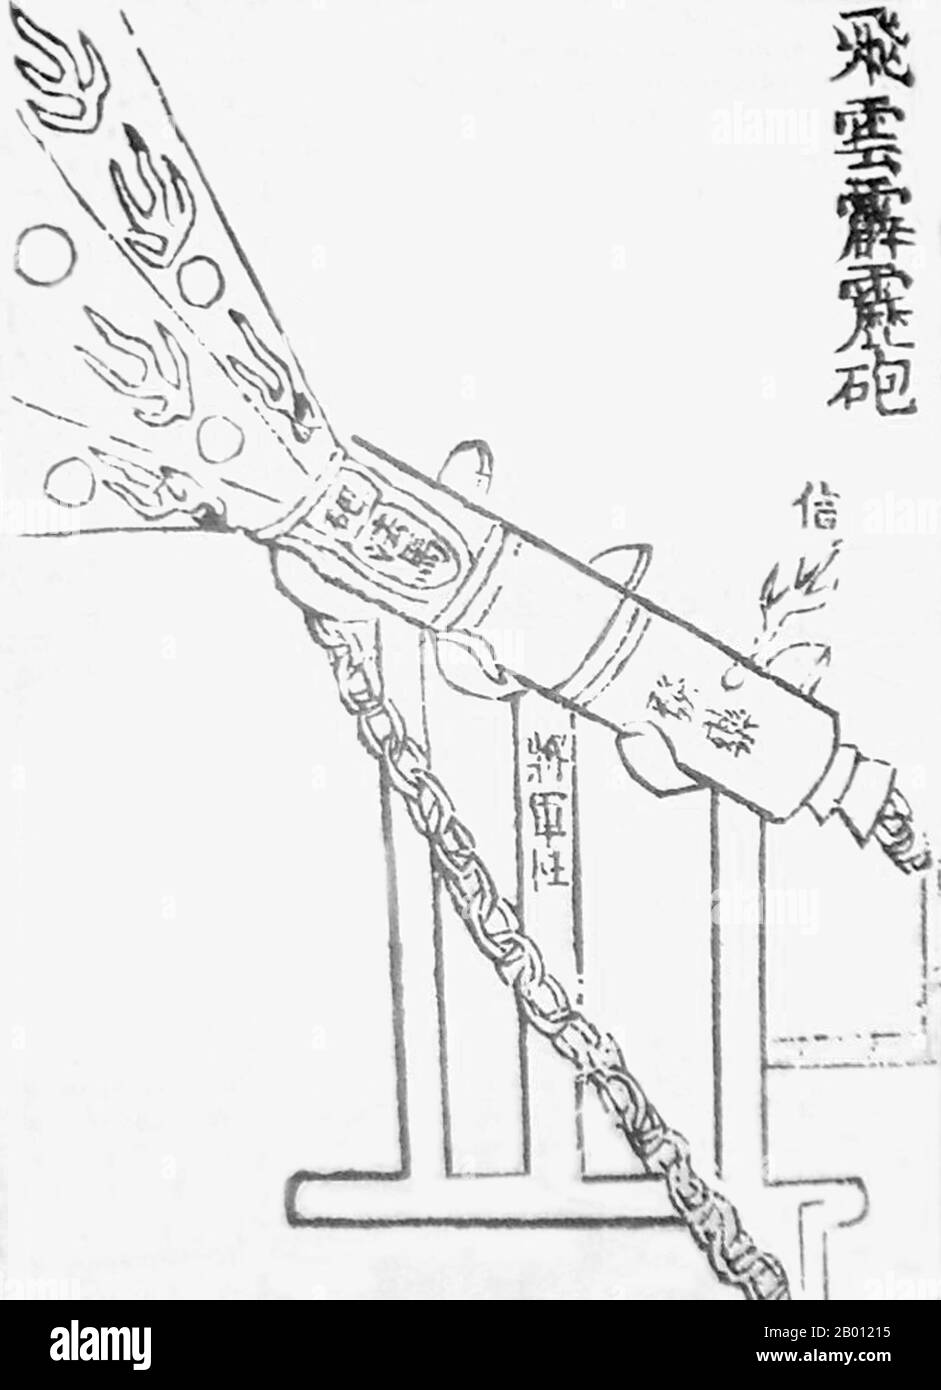 China: Eine chinesische Kanone aus dem 14. Jahrhundert, der 'fliegende Gewitterklatsch-Eruptor'. Illustration von Jiao Yu (14. Jahrhundert) und Liu Ji (1311-1375), 14. Jahrhundert. Eine Illustration aus dem 14. Jahrhundert einer chinesischen Kanone oder eines Eruptors, die Proto-Muscheln als gusseiserne Bomben abfeuerte. Diese Illustration wurde in der Militärtraktatise des Huolongjing aus dem 14. Jahrhundert vorgestellt, die von Liu Ji und Jiao Yu herausgegeben und zusammengestellt wurde, mit dem Vorwort, das 1412 hinzugefügt wurde. Diese spezielle Kanone wurde als „Gewitterklatsch-Eruptor“ (Feiyun pilipao) bezeichnet. Stockfoto